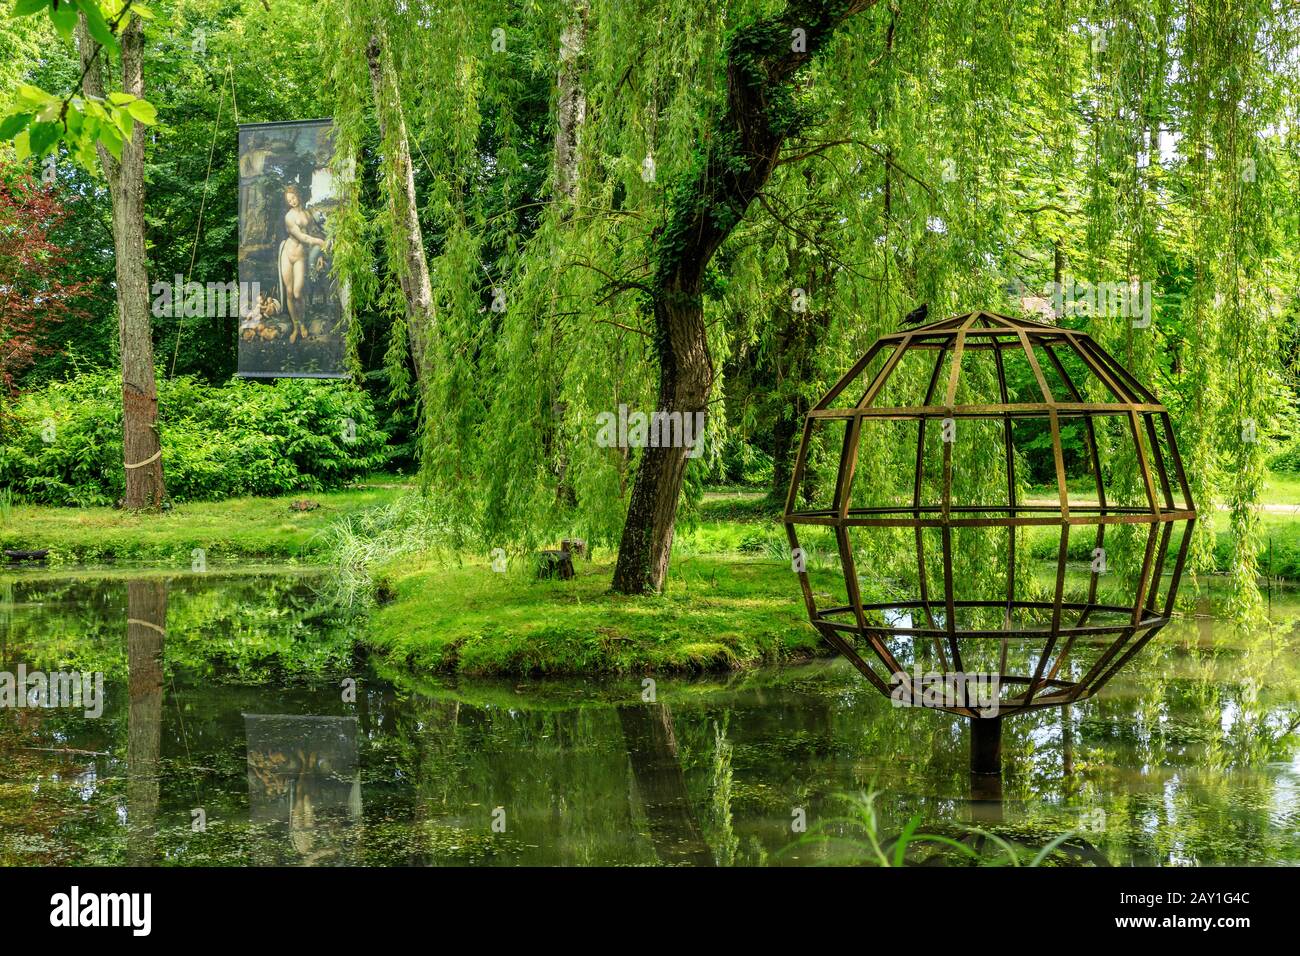 Francia, Indre et Loire, Valle della Loira dichiarata Patrimonio dell'Umanità dall'UNESCO, Amboise, Chateau du Clos Lucé Park e Giardini, nel Parc Leonardo da Vinci Foto Stock